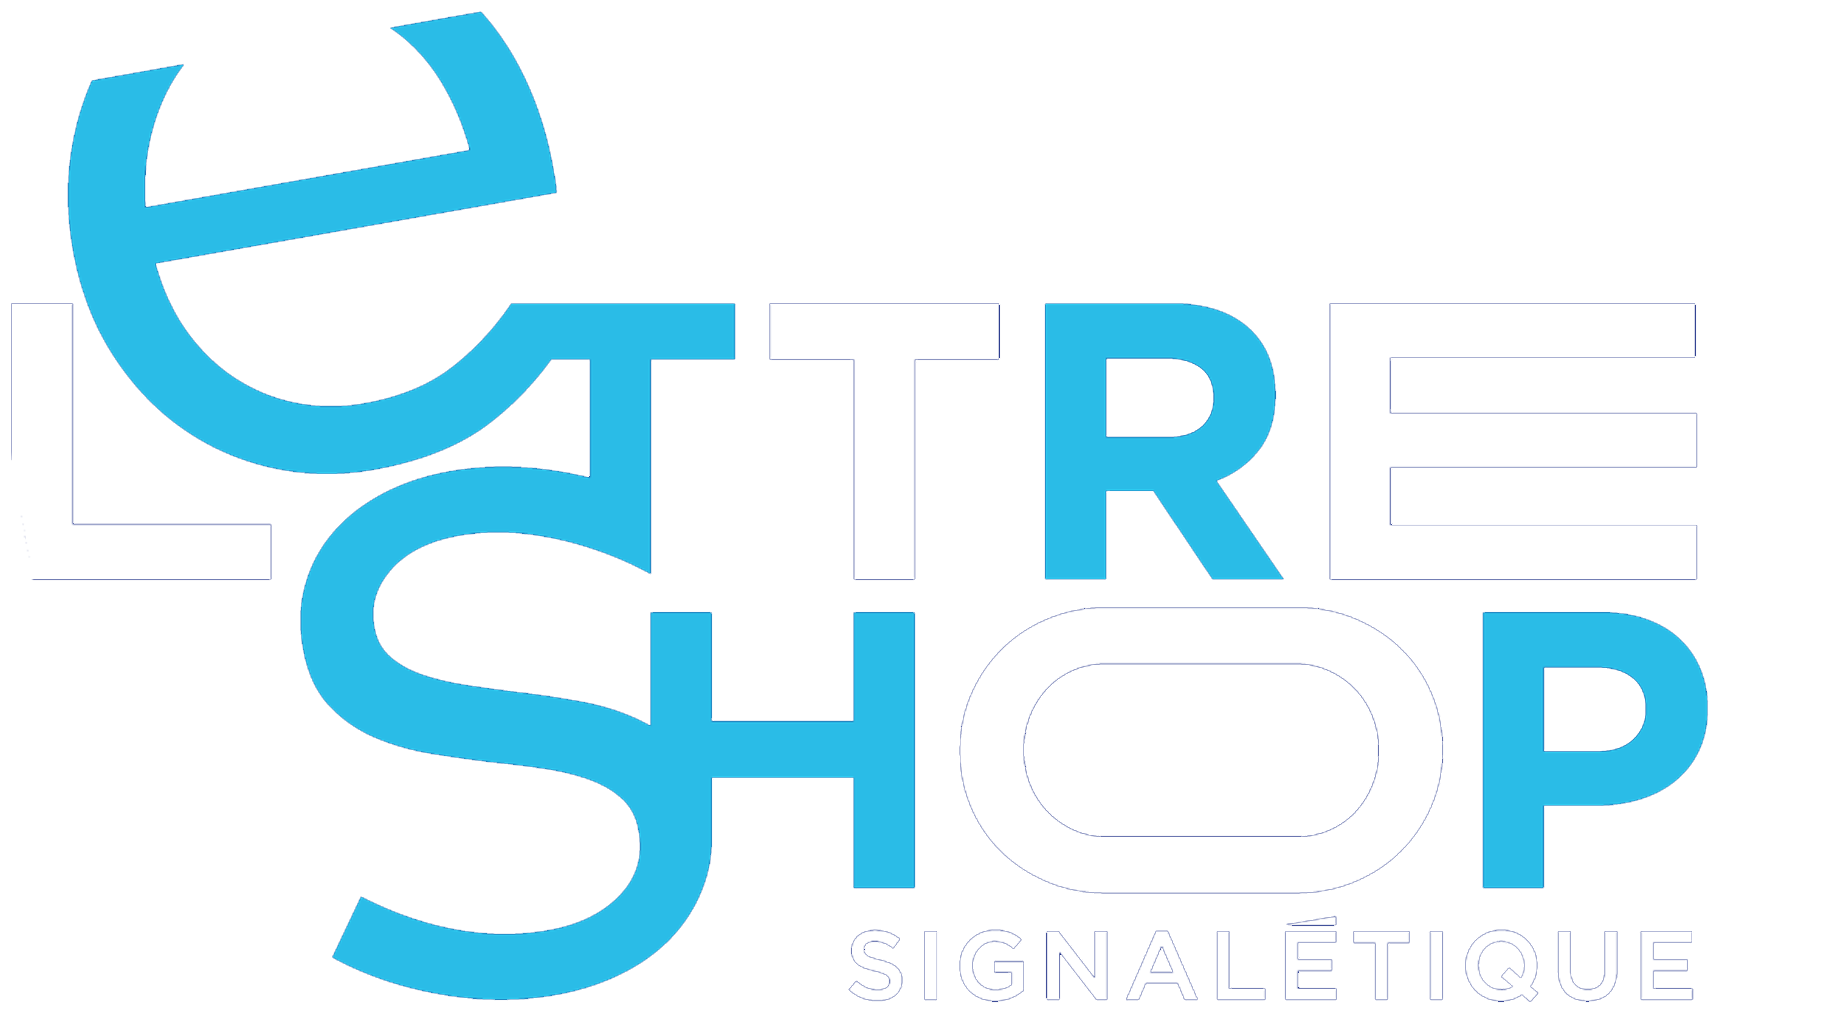 Lettreshop SignalÃ©tique logo